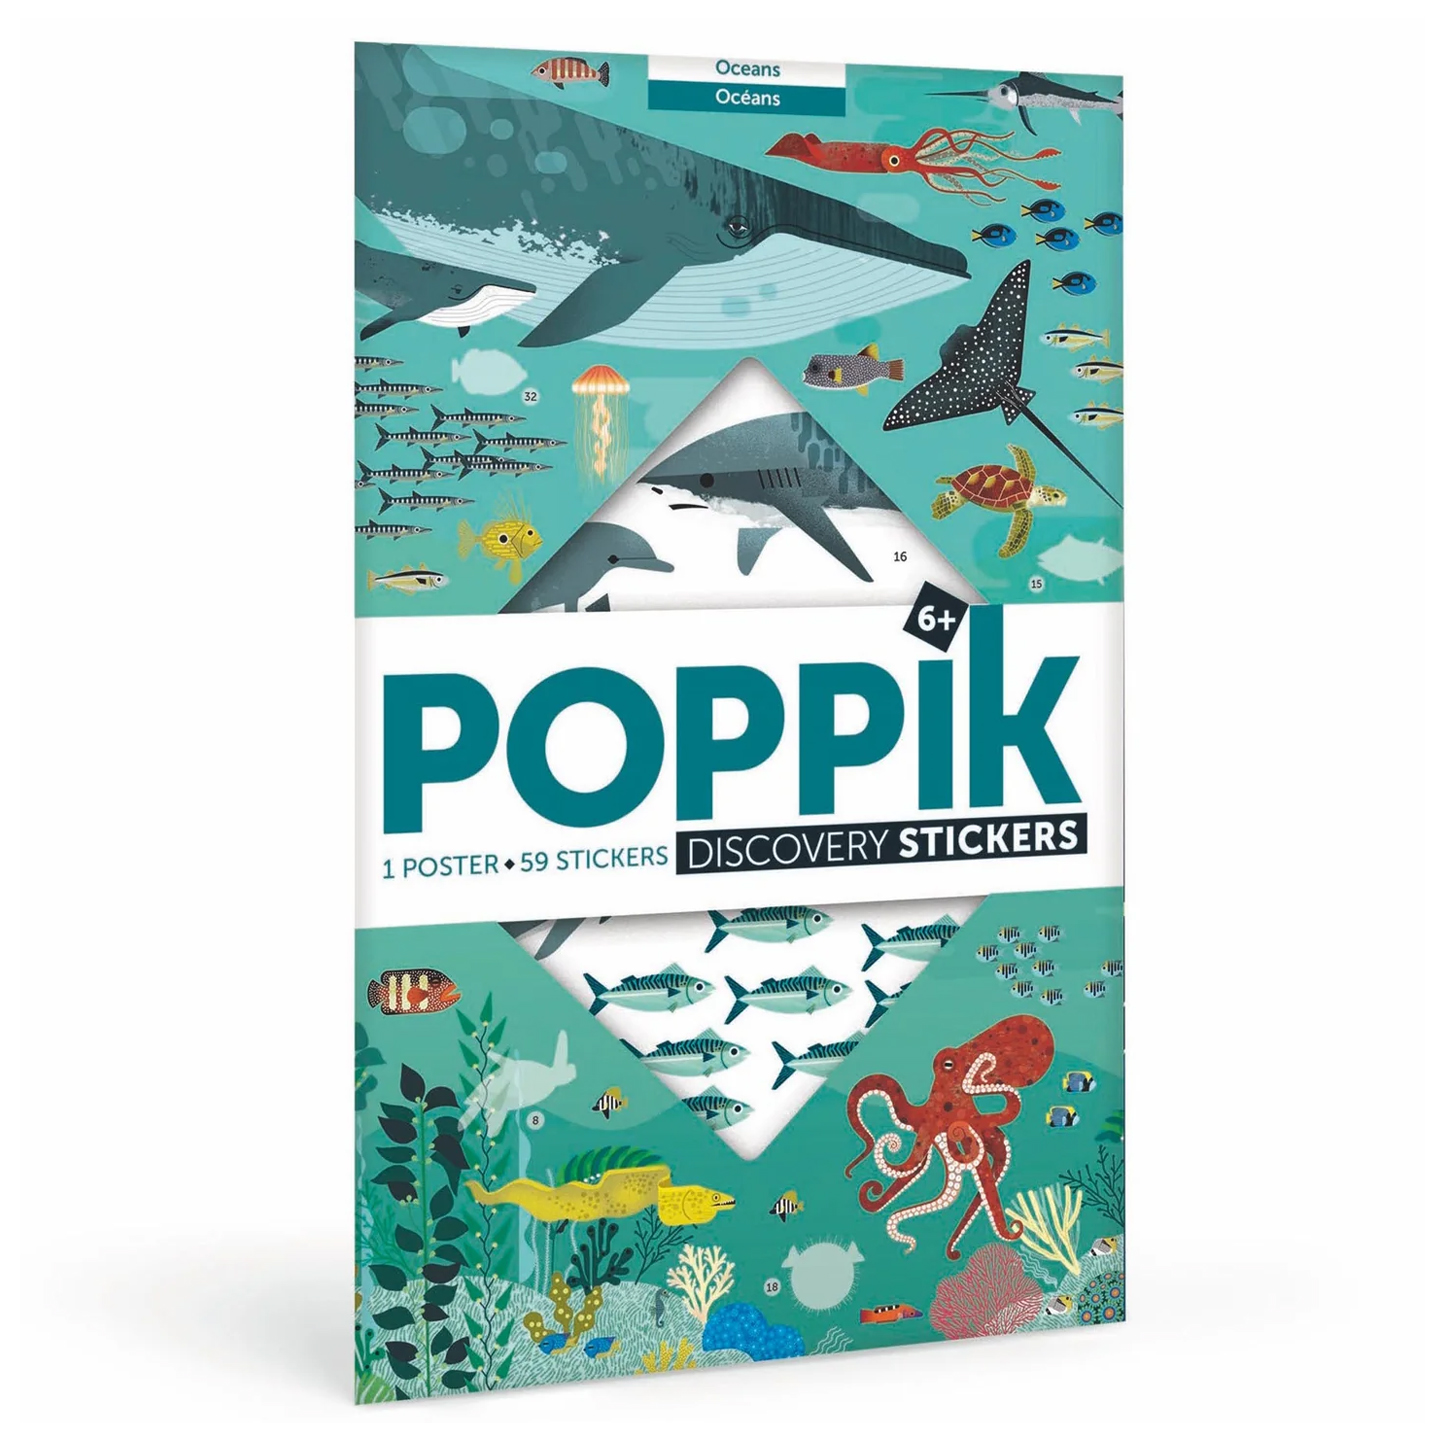  Poppik Discovery Sticker Poster - Oceans